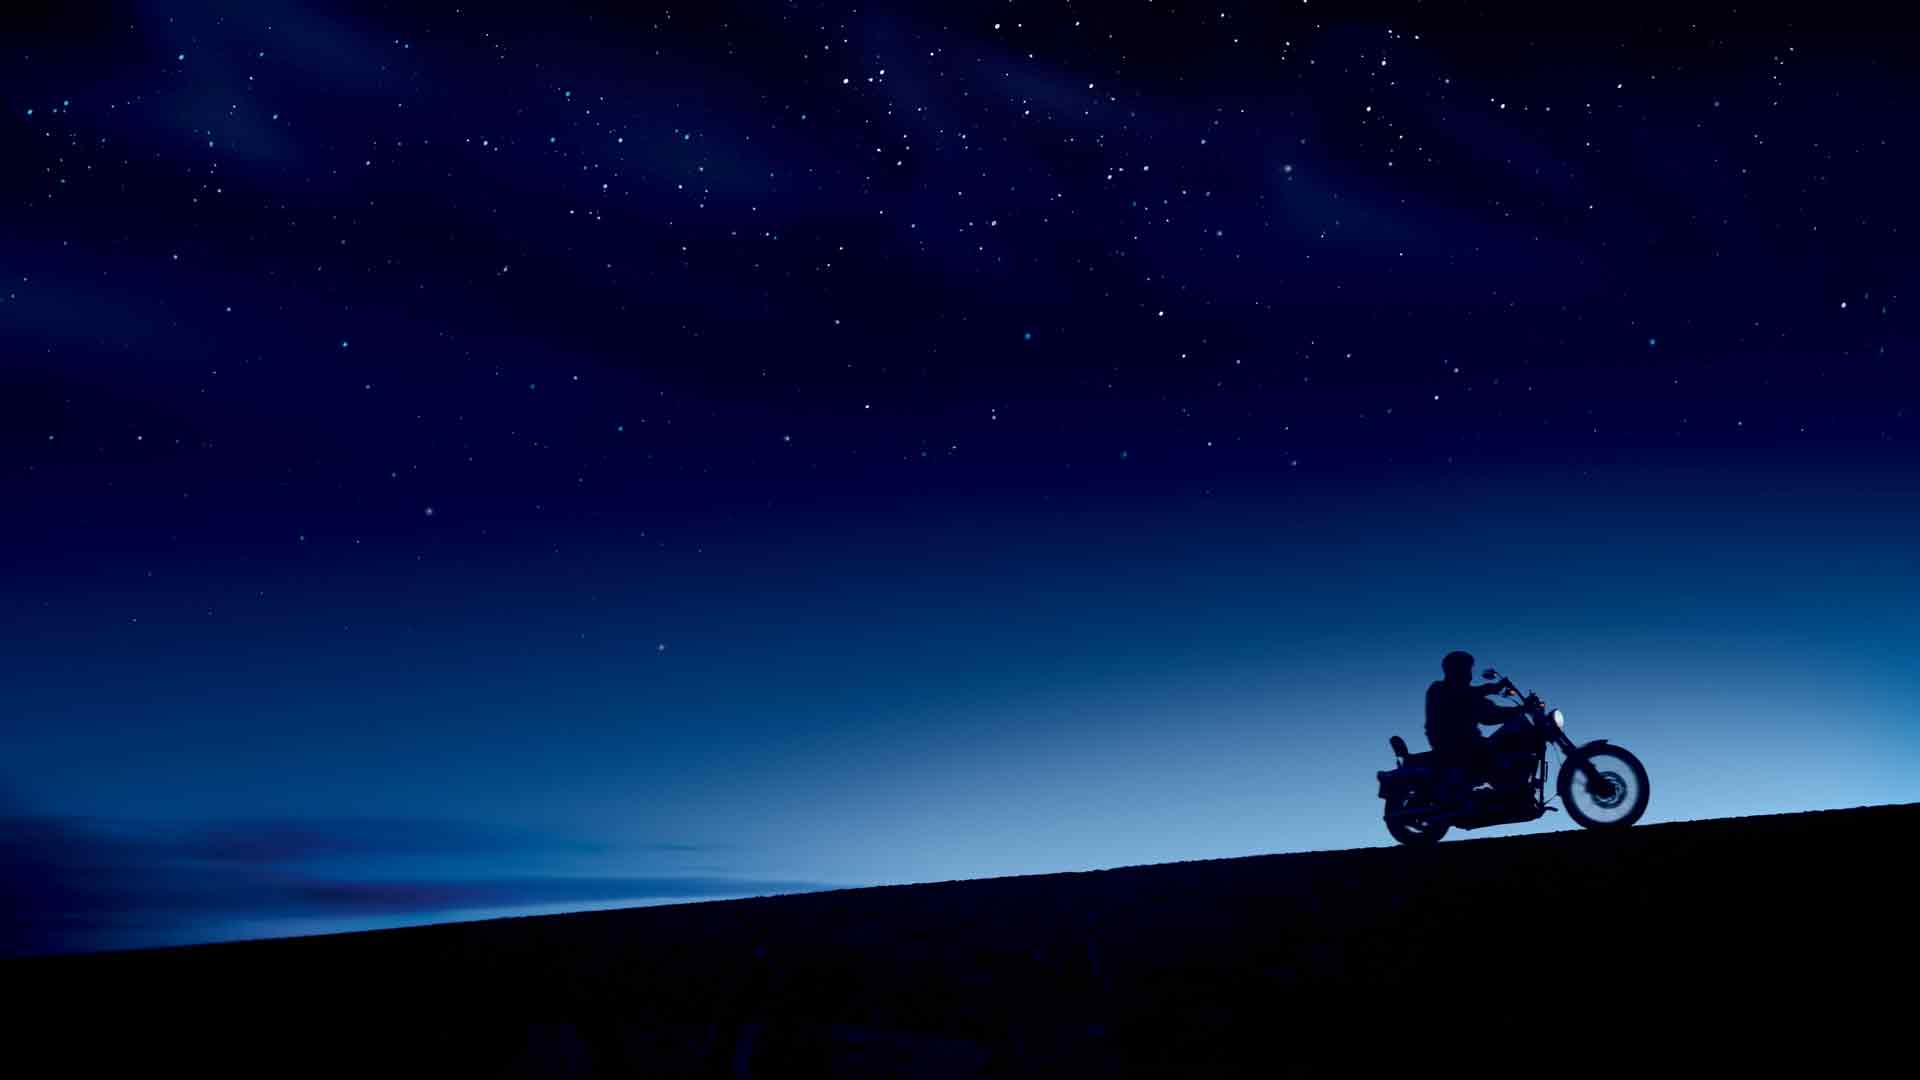 哈雷 戴维森哈雷 摩托车 摩托车 星夜 星夜 蓝暗 午夜星空